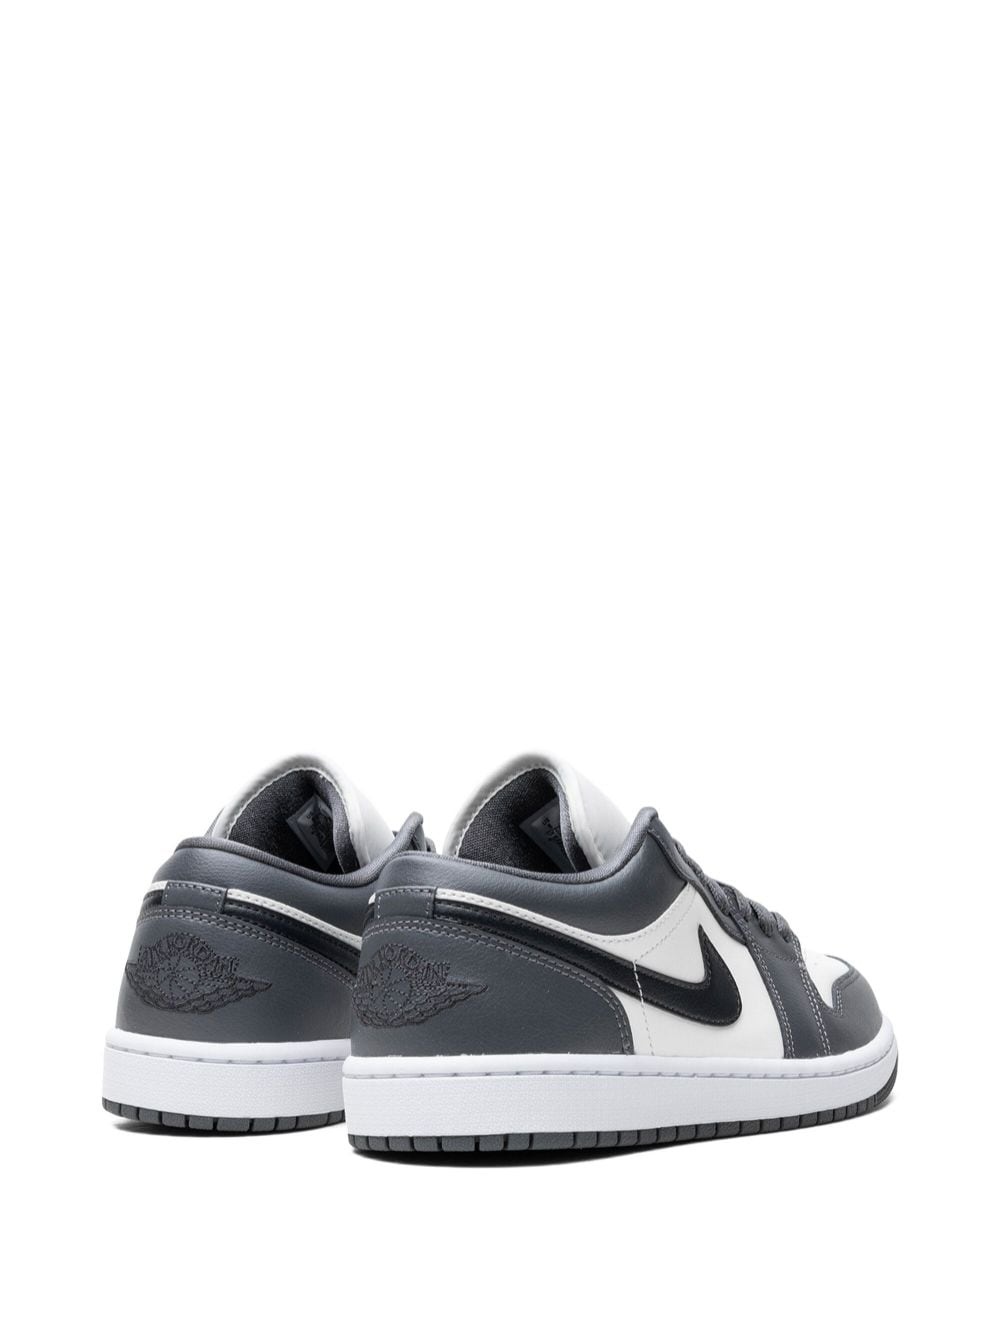 Air Jordan 1 "Dark Grey" sneakers - 3